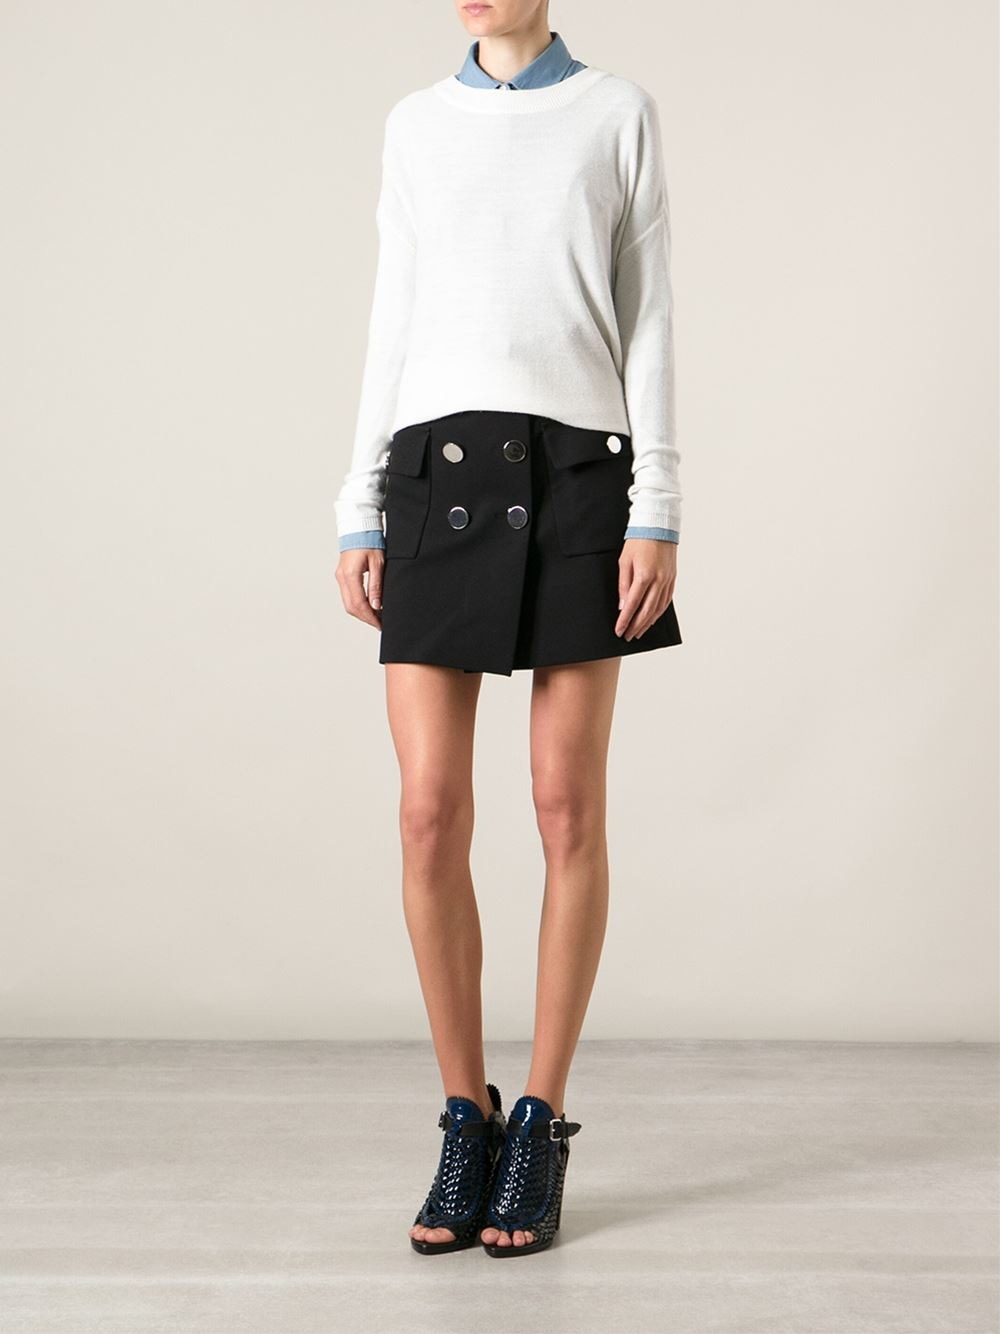 Lyst - Gucci Mini Skirt in Black